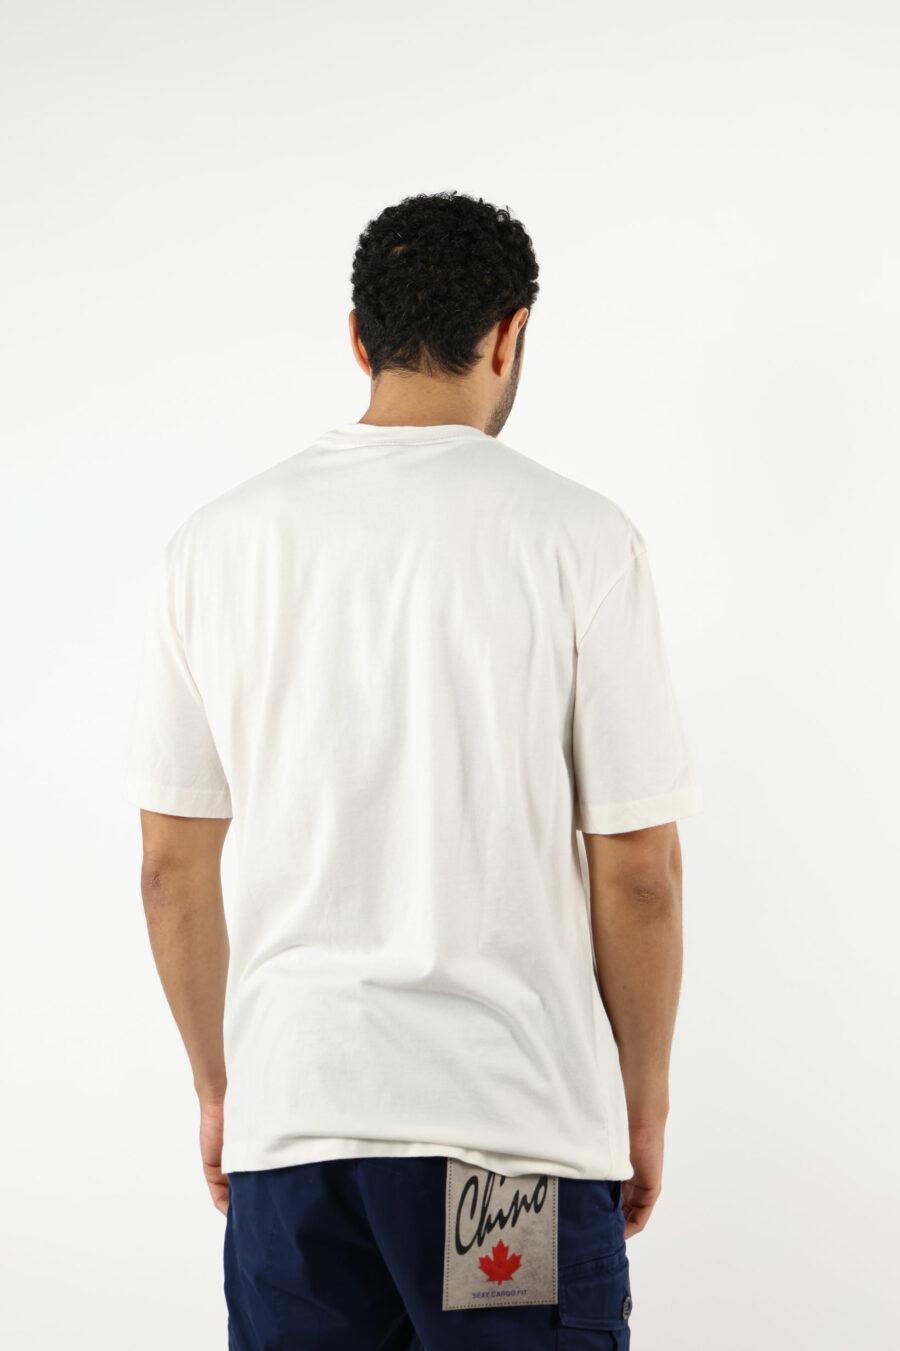 Weißes T-Shirt mit getragenem Schild maxilogo - 111161